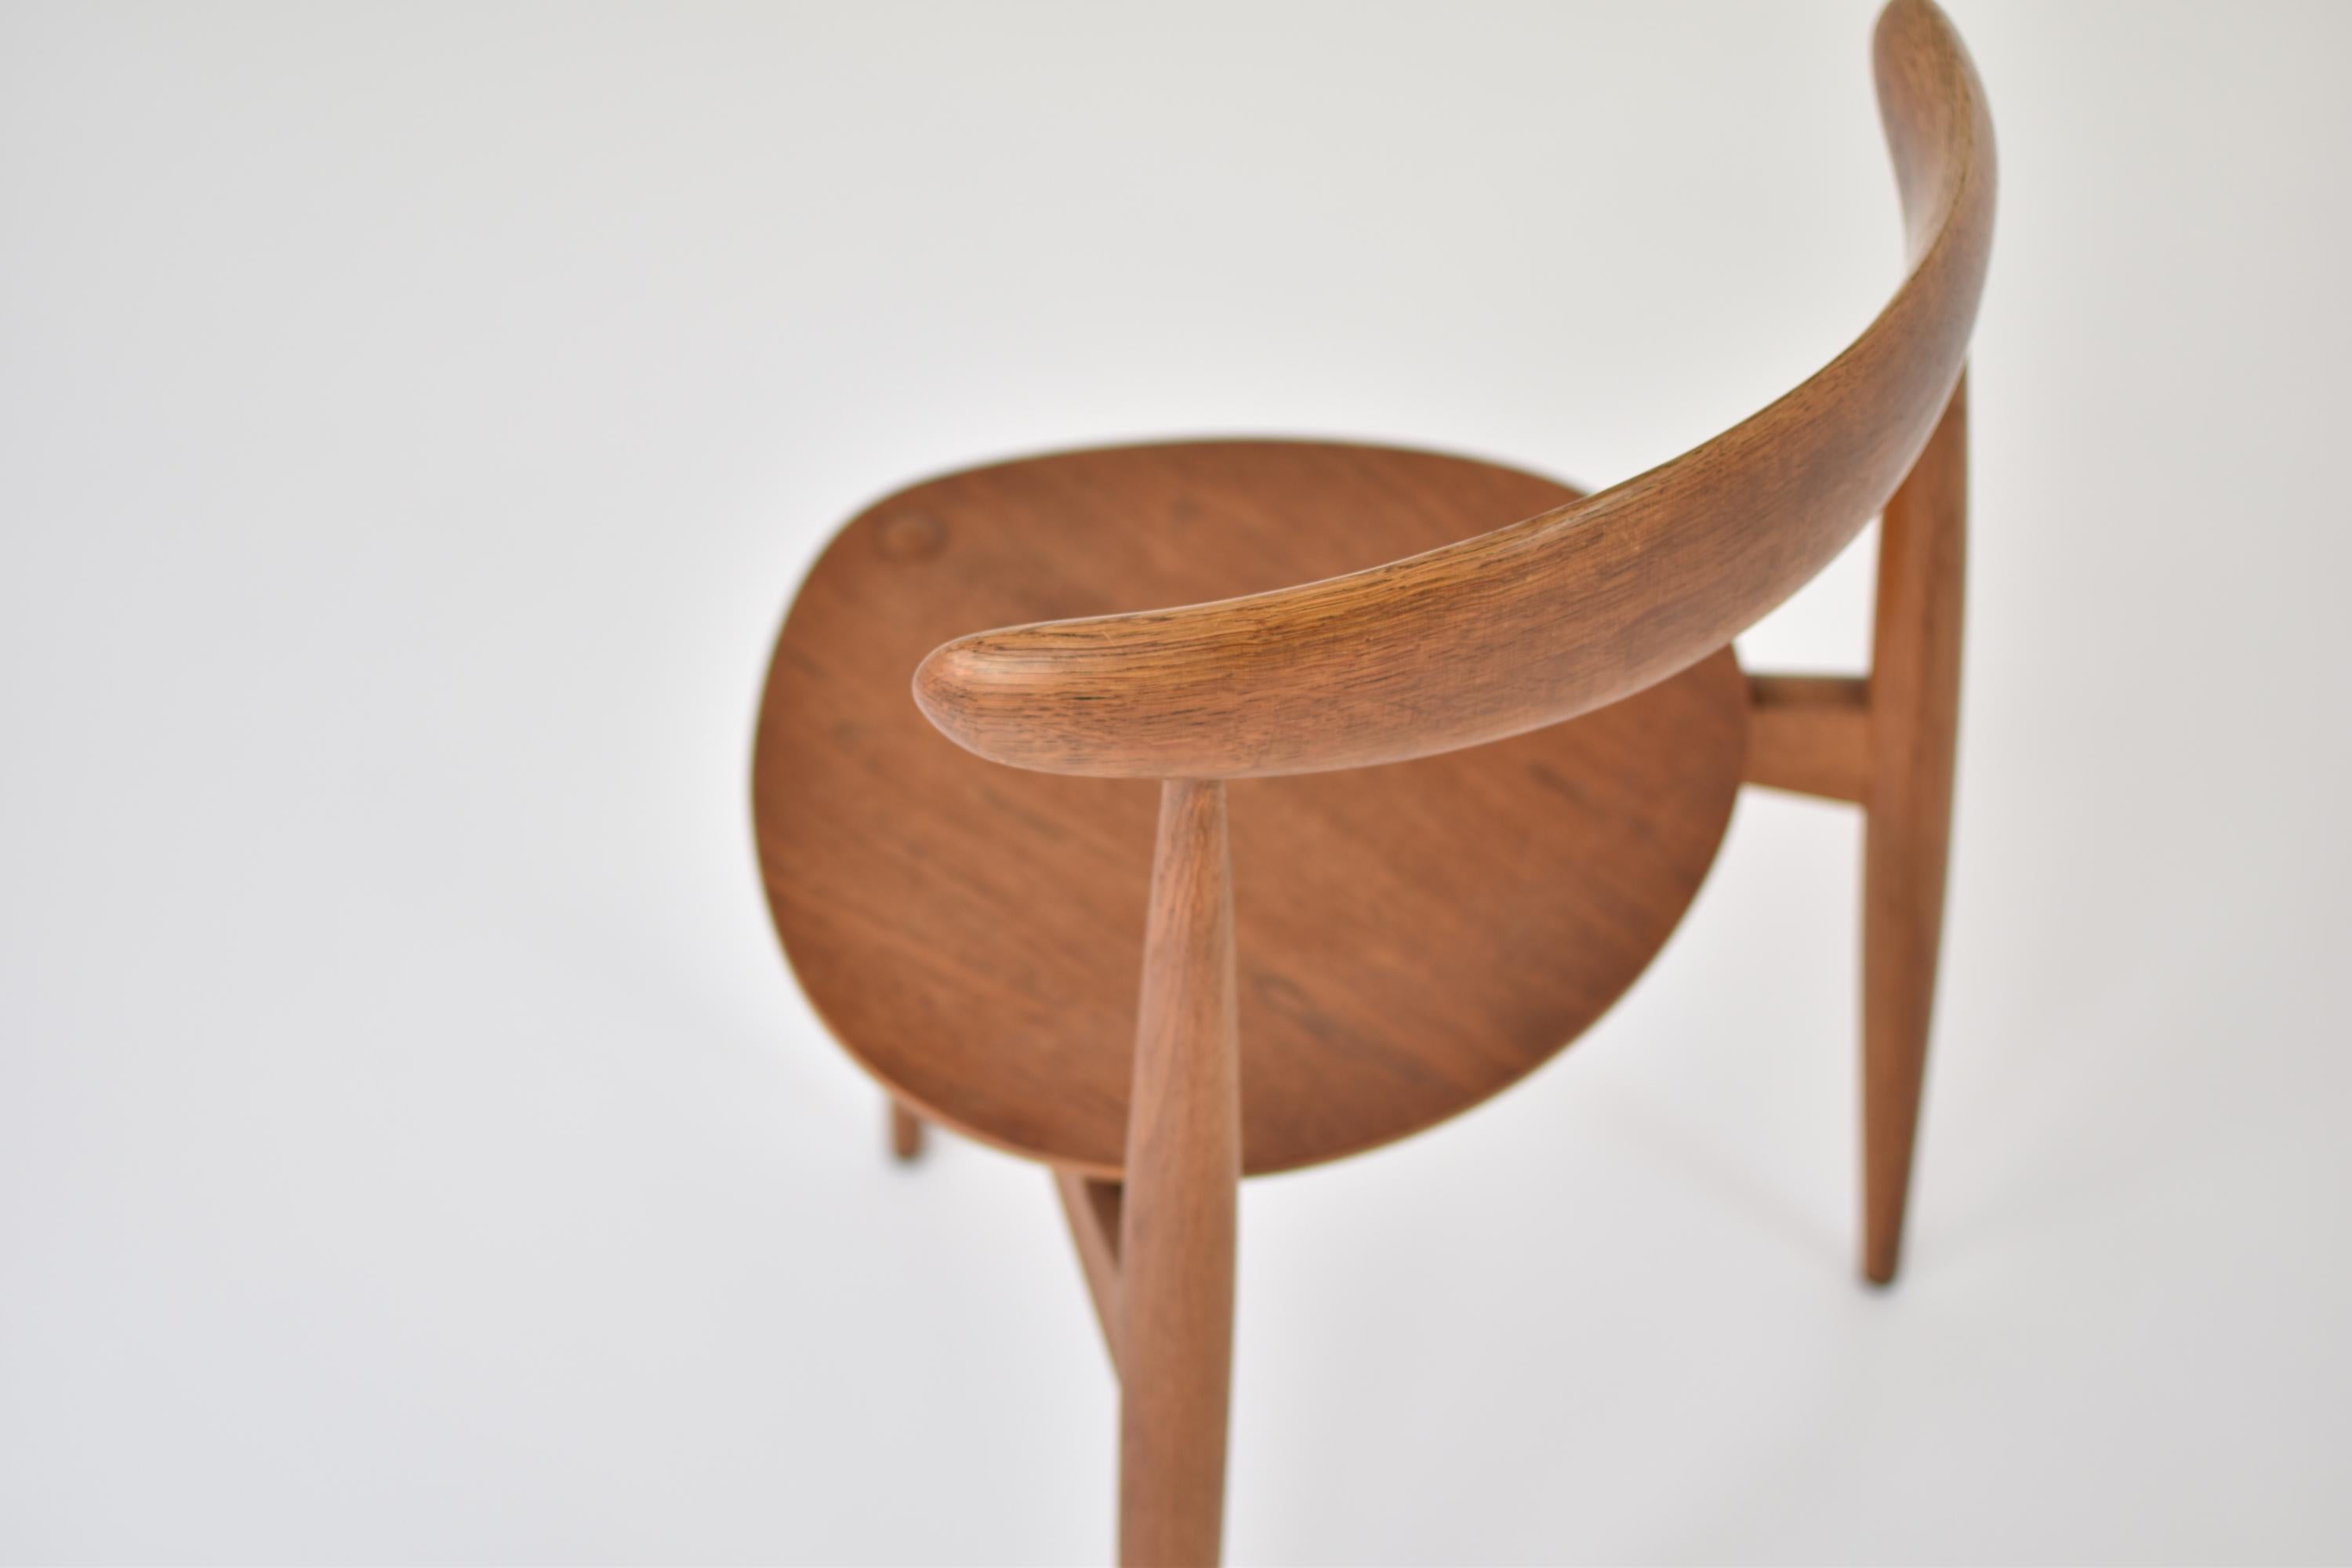 Teak Early ‘Heart’ Side Chair by Hans J. Wegner for Fritz Hansen, Denmark, 1952